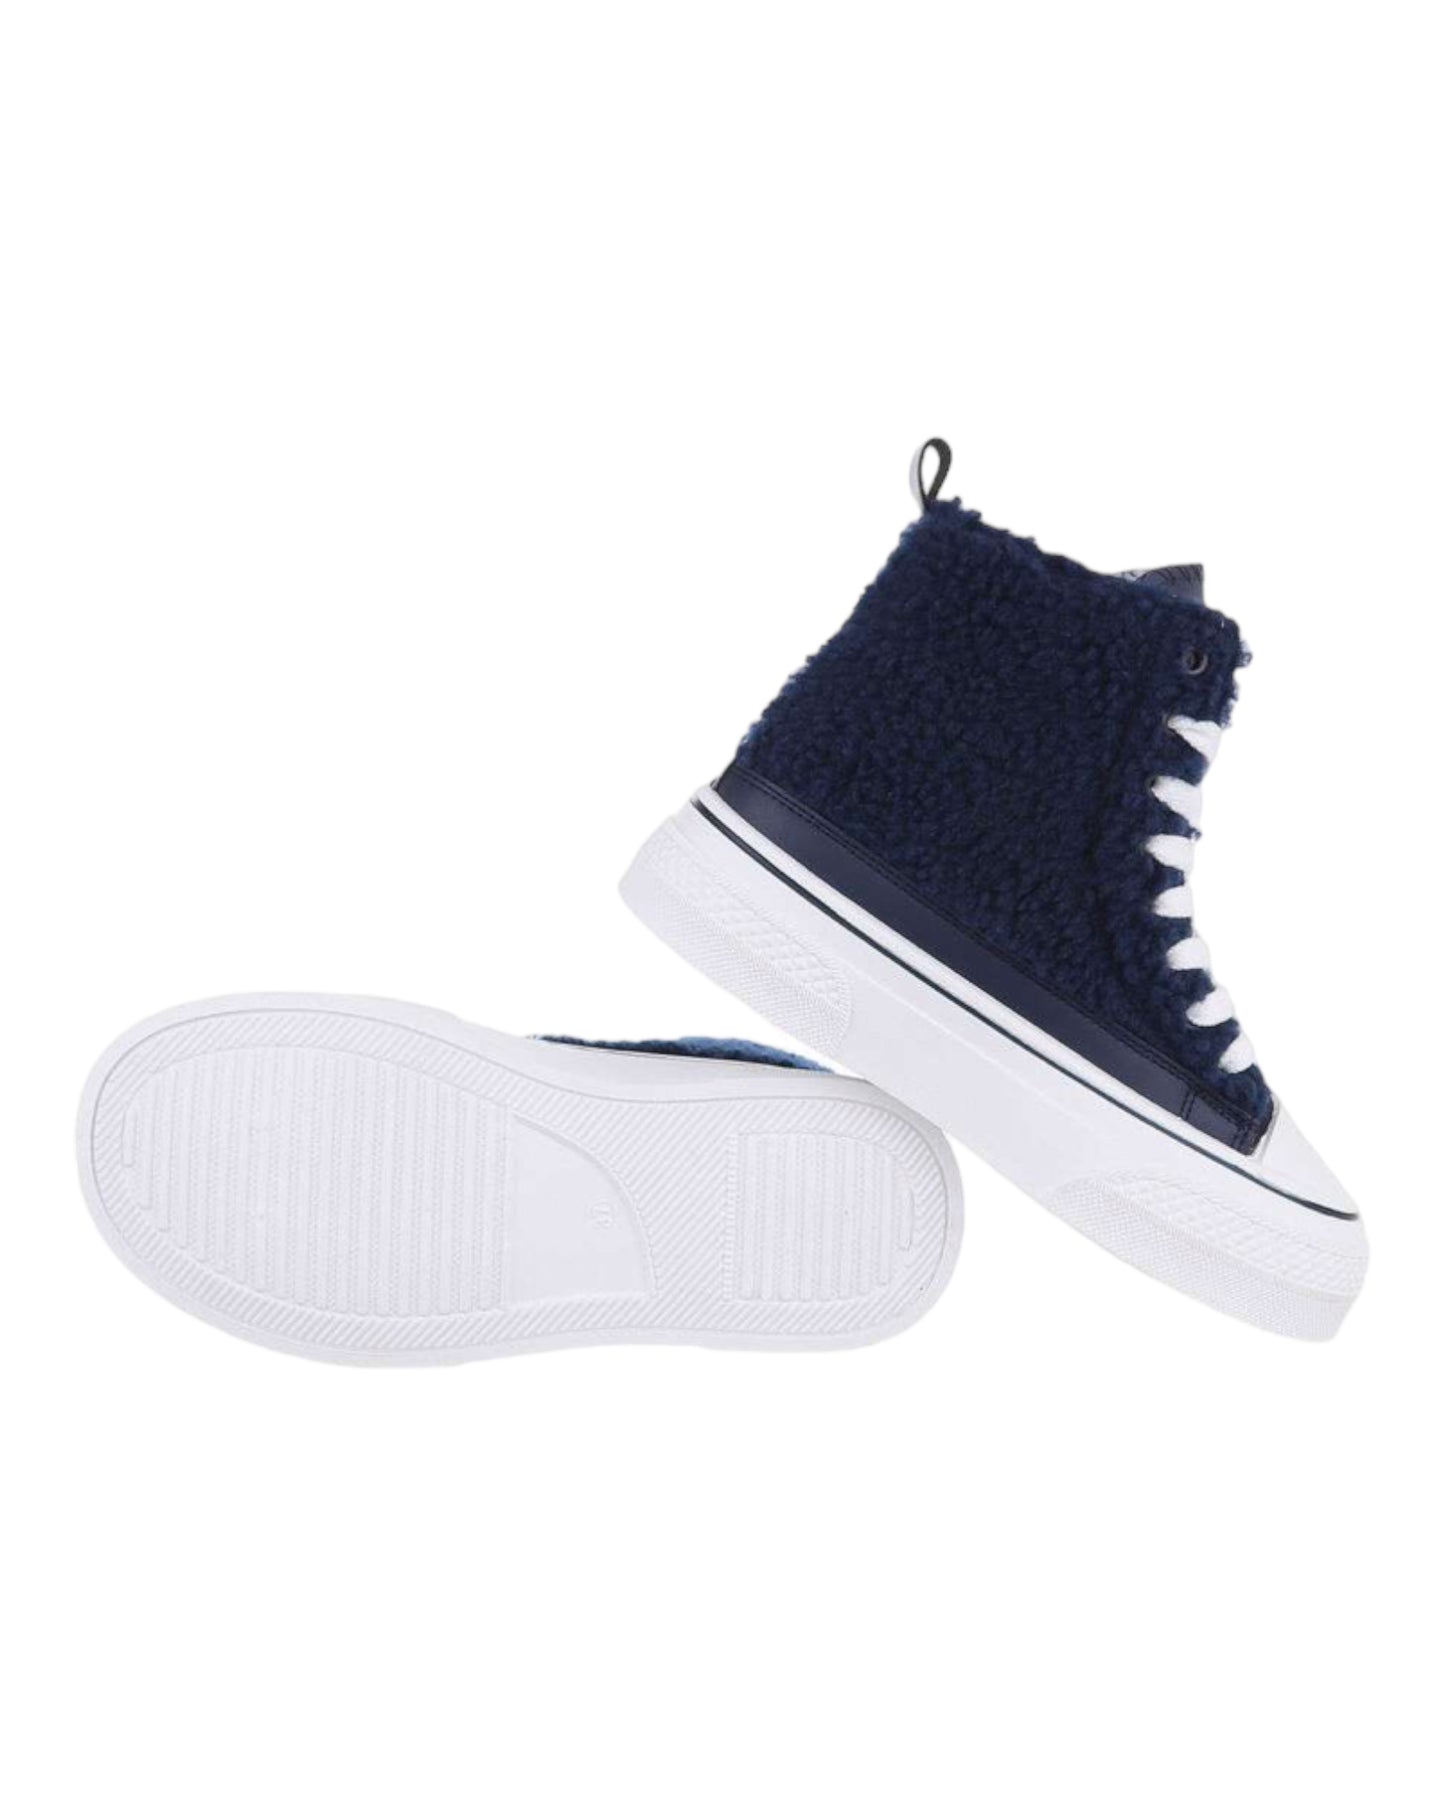 Chaussures style converse Bleu marine à semelles compensés - NuptiaLove